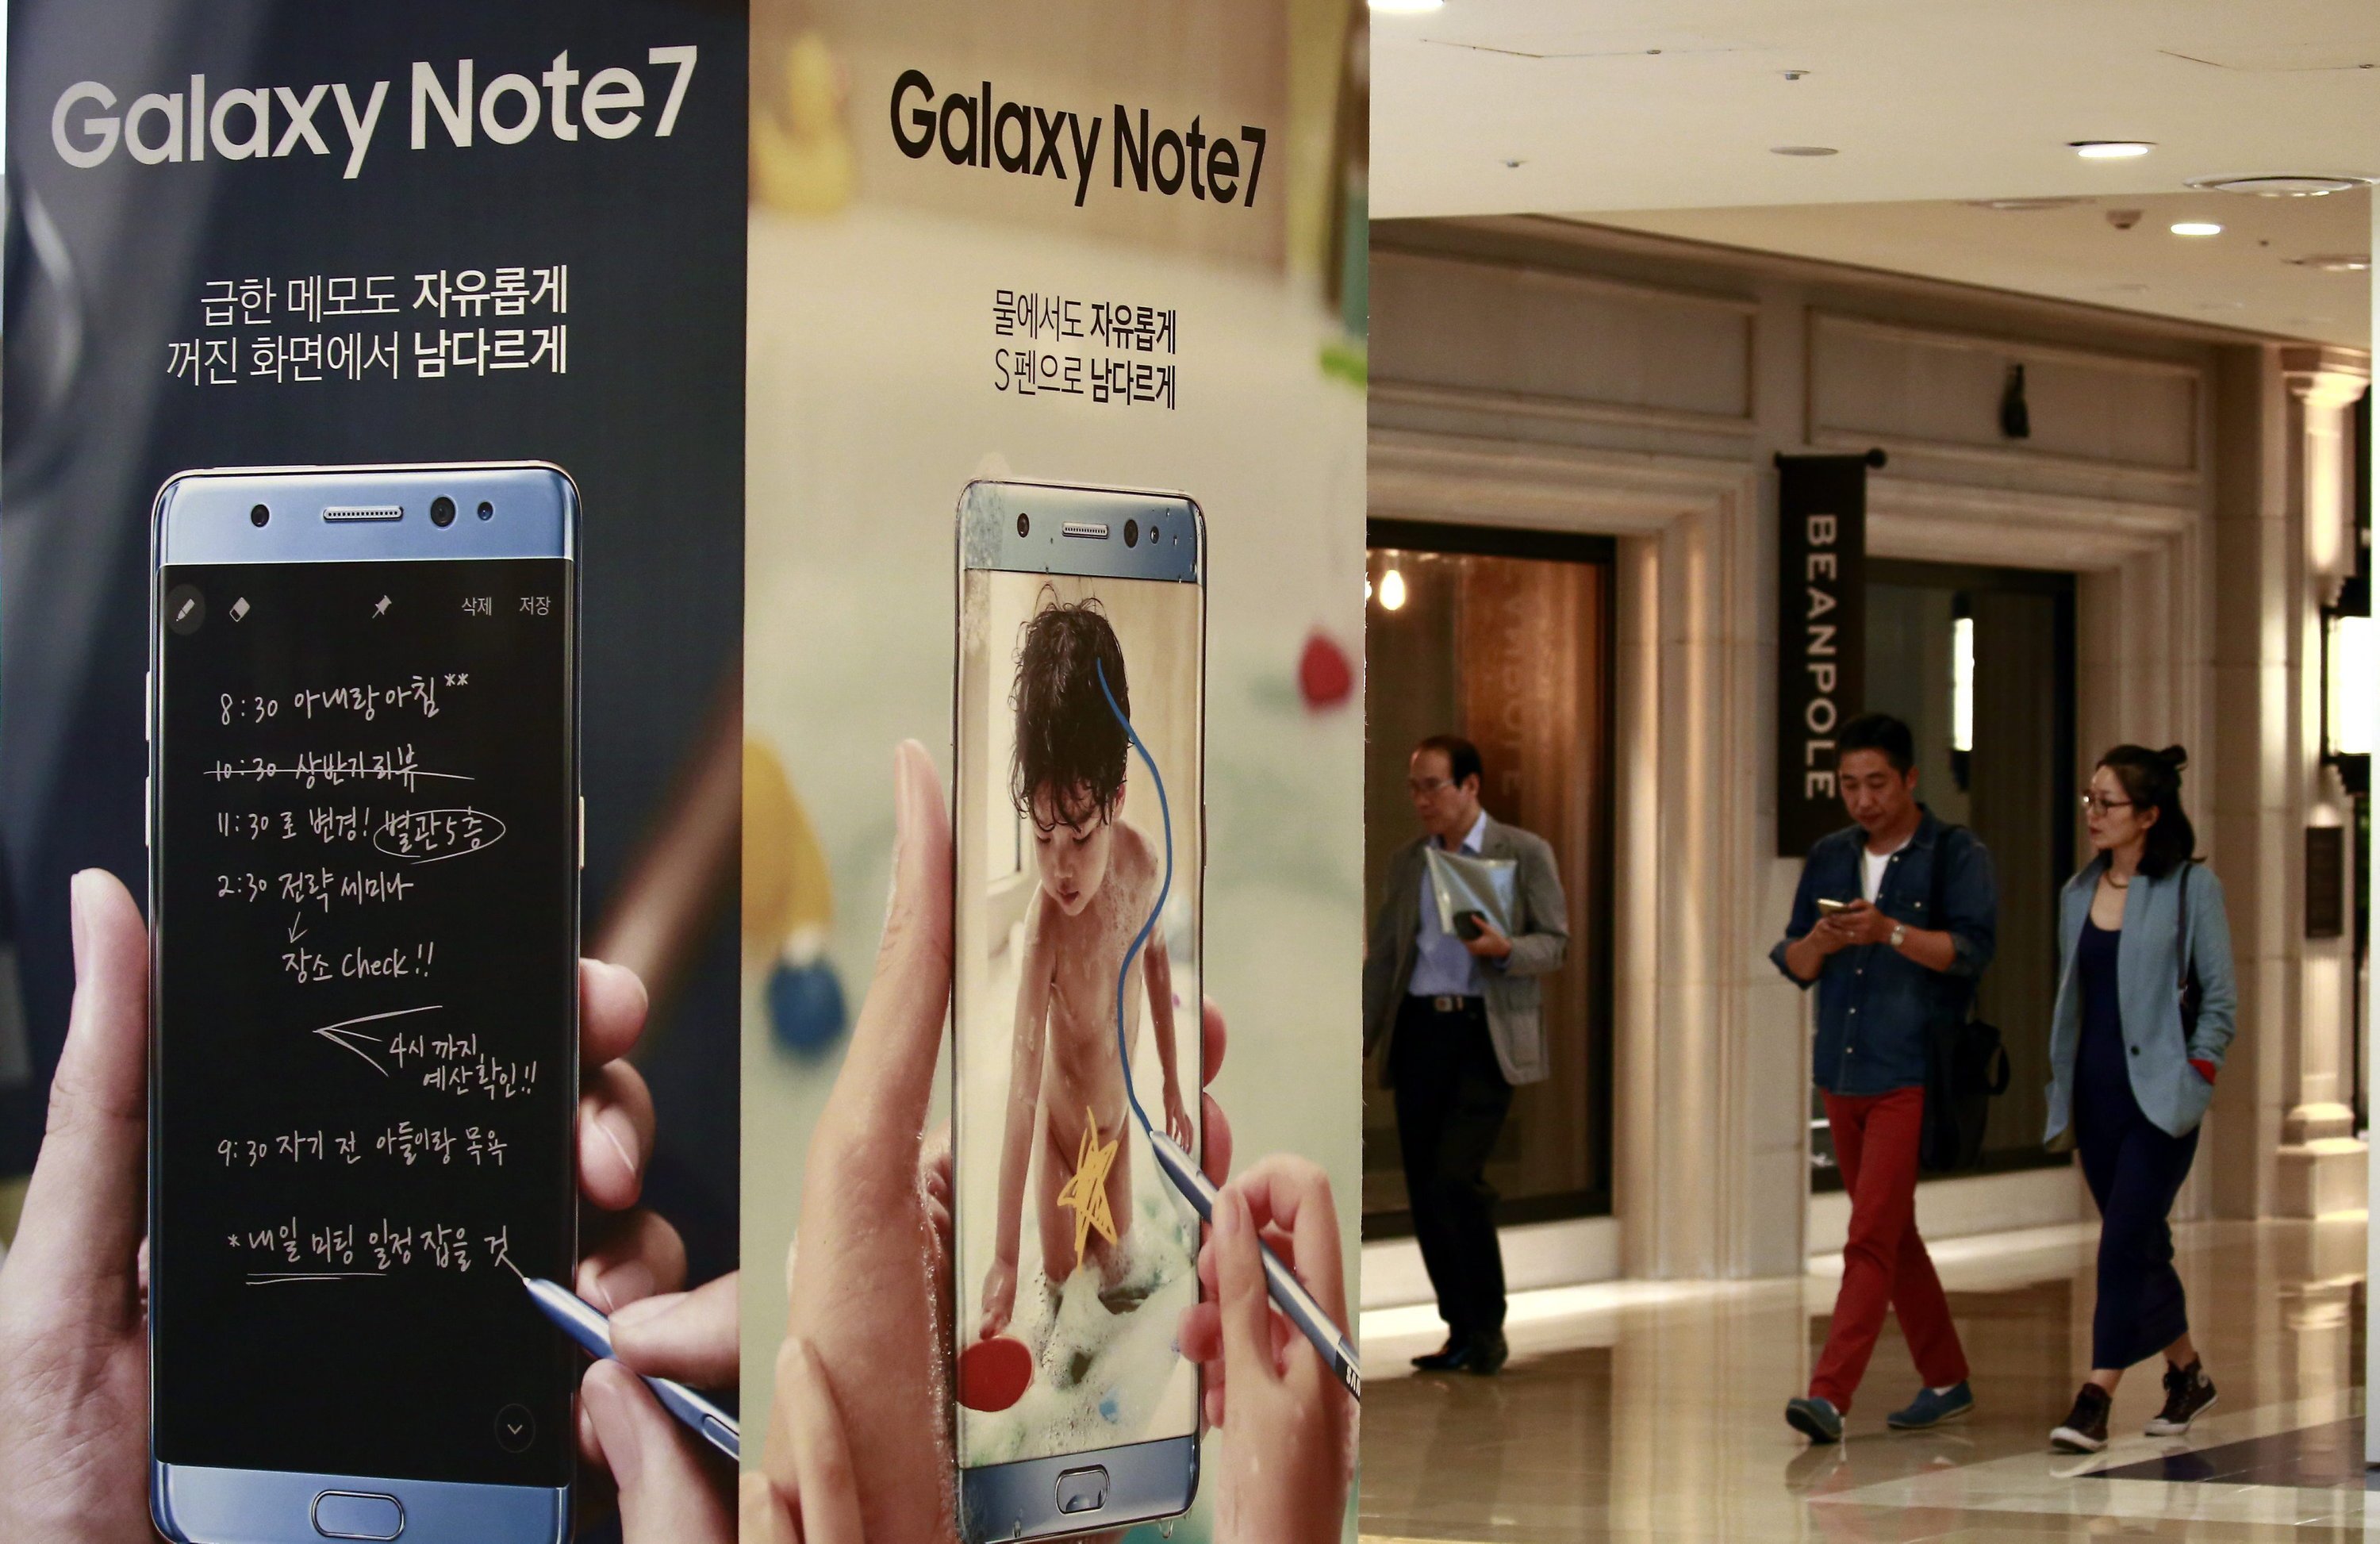 Samsung hat die Produktion seines neuen Galaxy Note 7 eingestellt. Damit reagiert der Konzern auf die Akkuprobleme des neuen Smartphones. Auch die Akkus der Austauschgeräte fangen Feuer. 